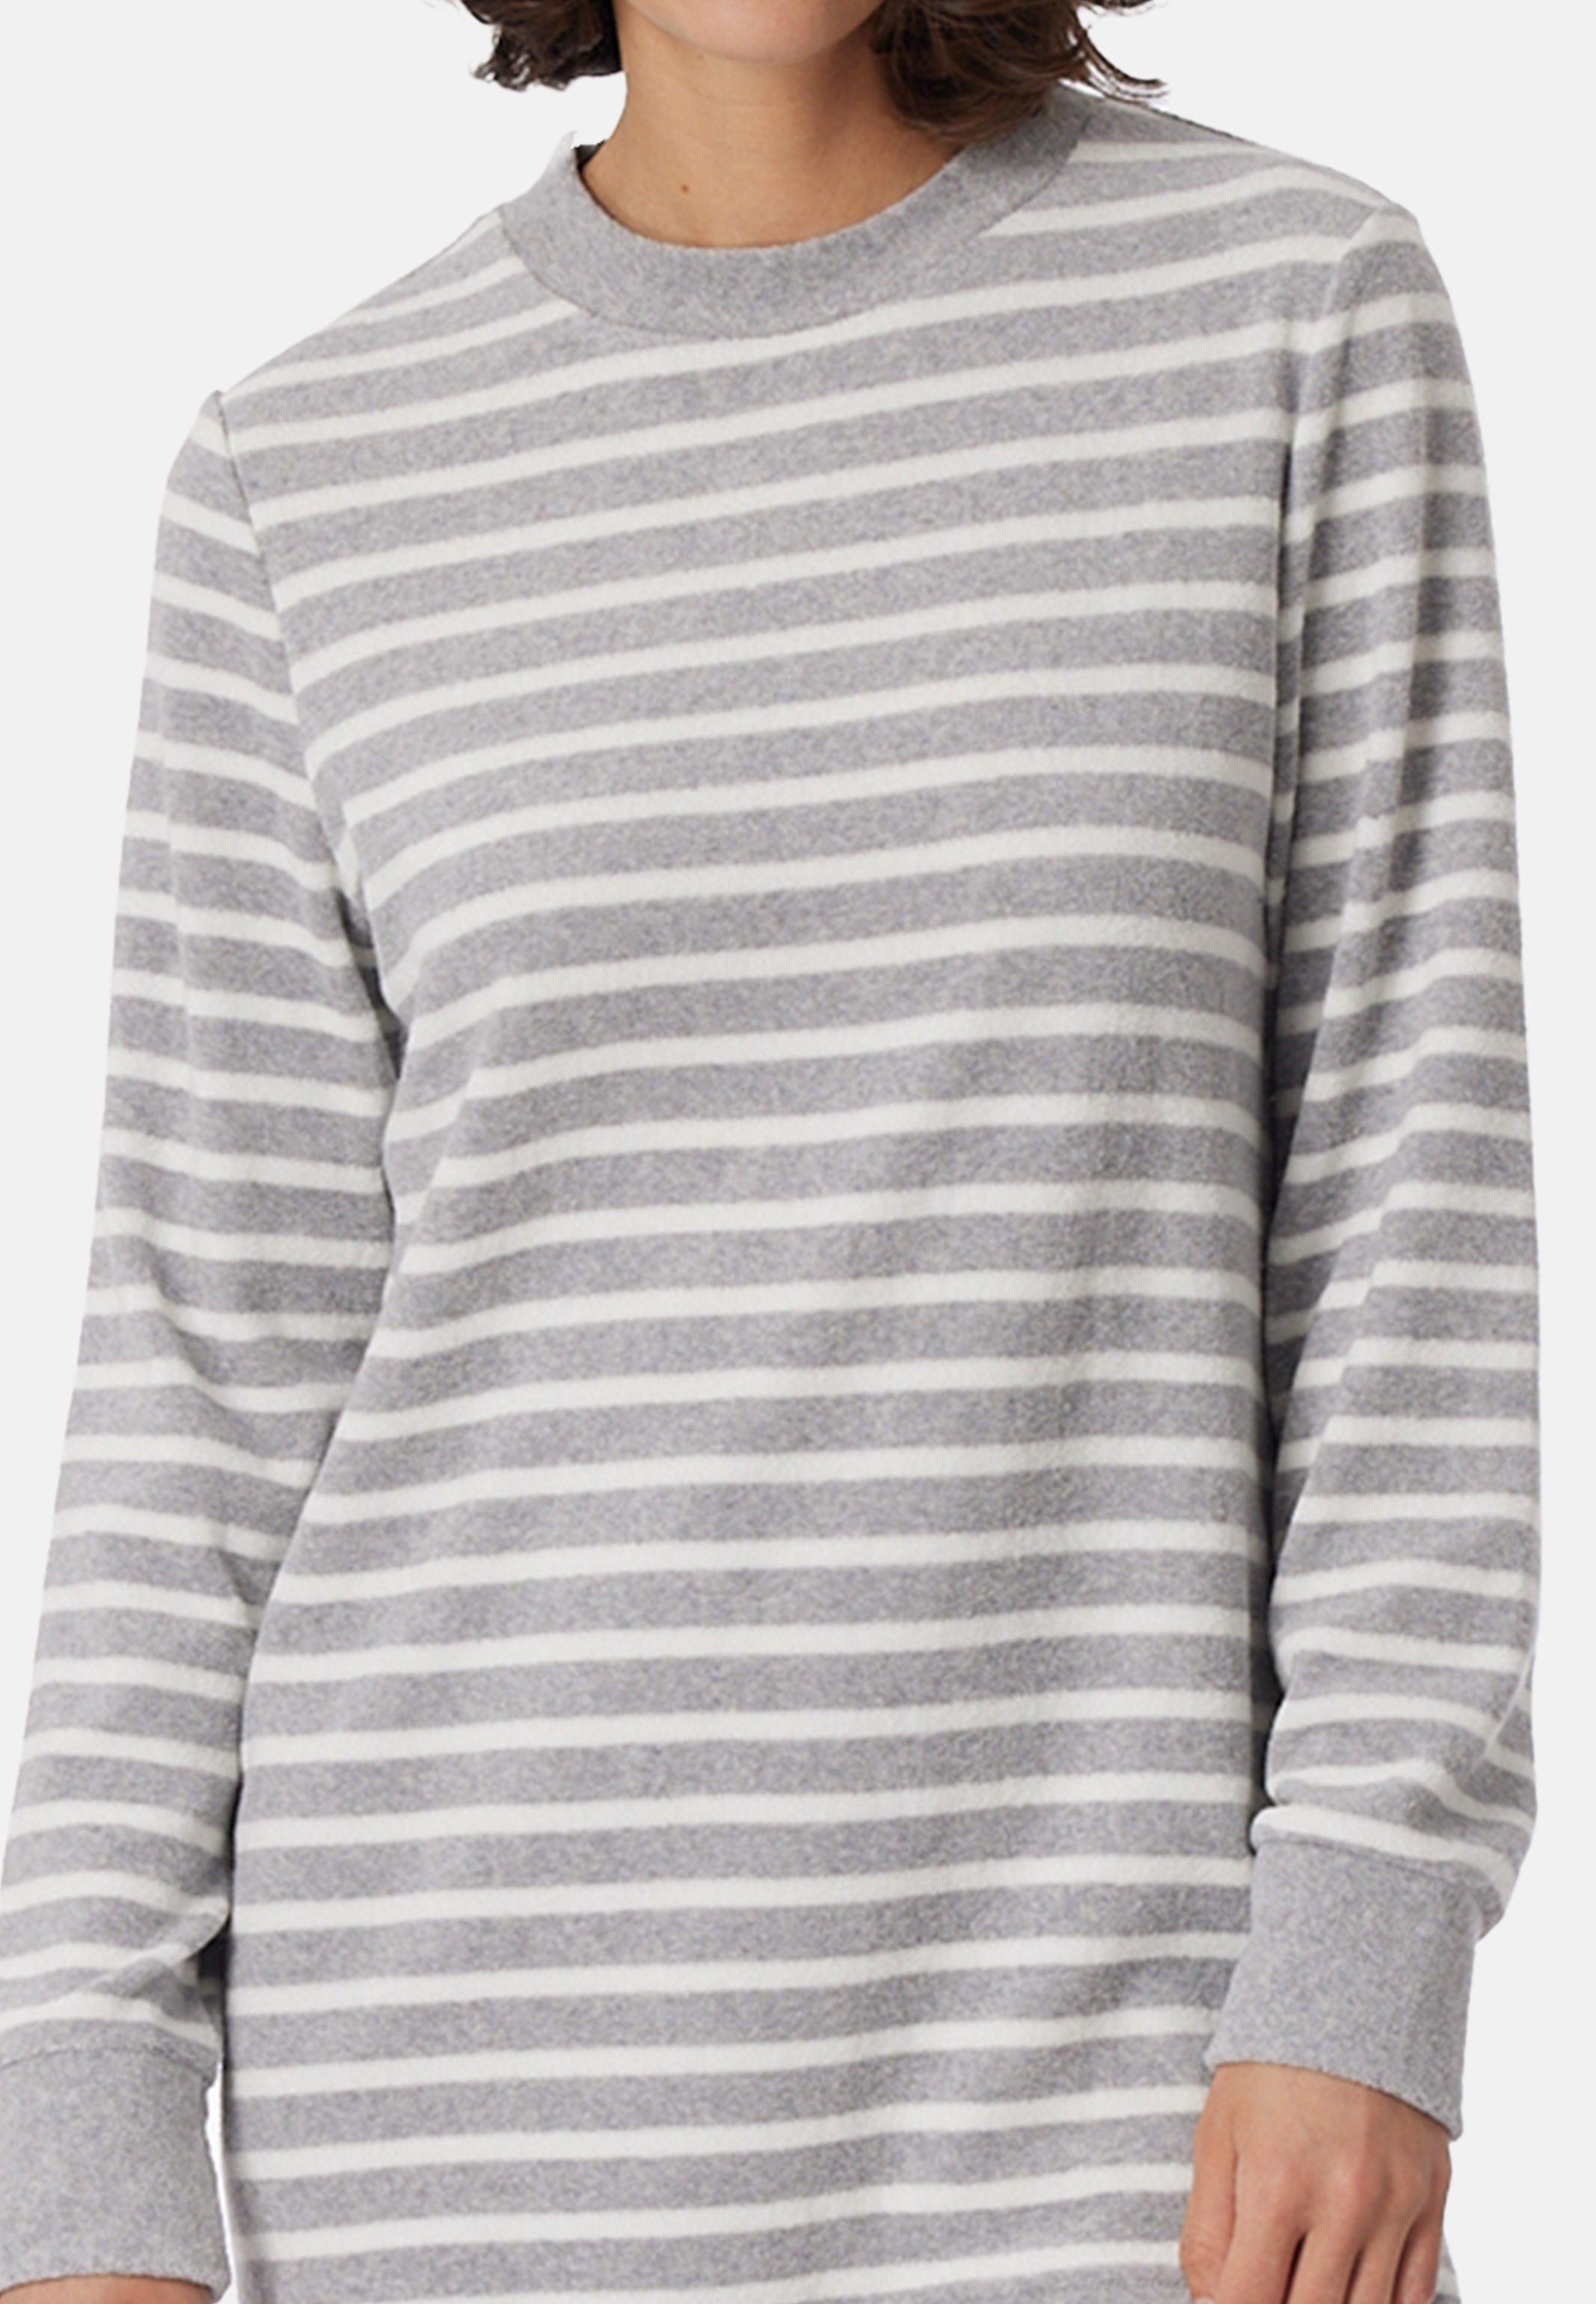 Schiesser Langarmshirt Casual Passform (Set, Pyjama längerer - Baumwolle Schlafanzug Melange mit 2 tlg) Grau - Essentials